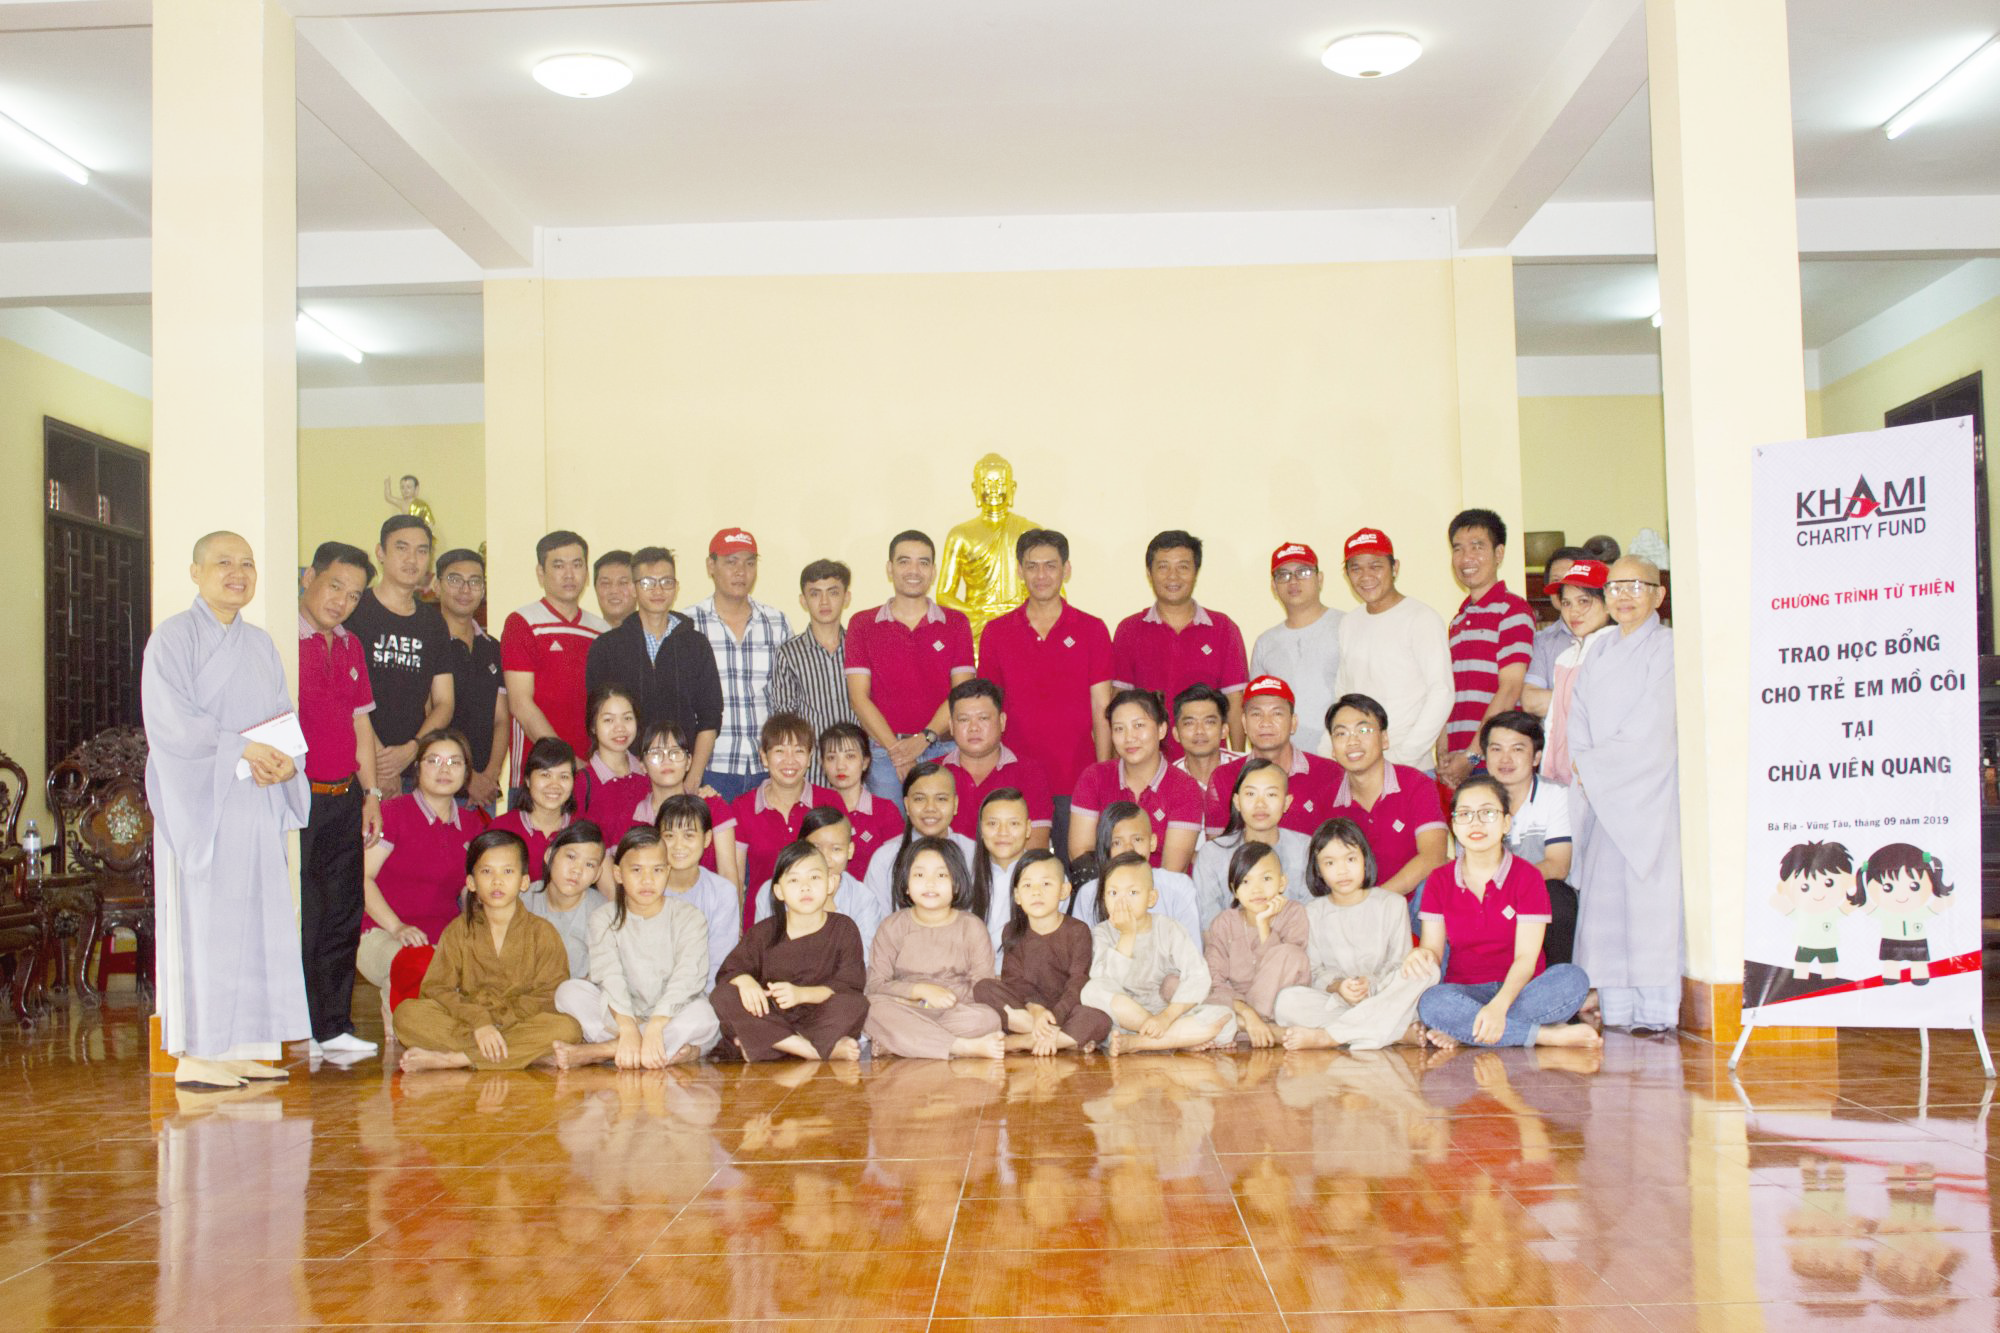 Trao học bổng cho trẻ mồ côi tại chùa Viên Quan